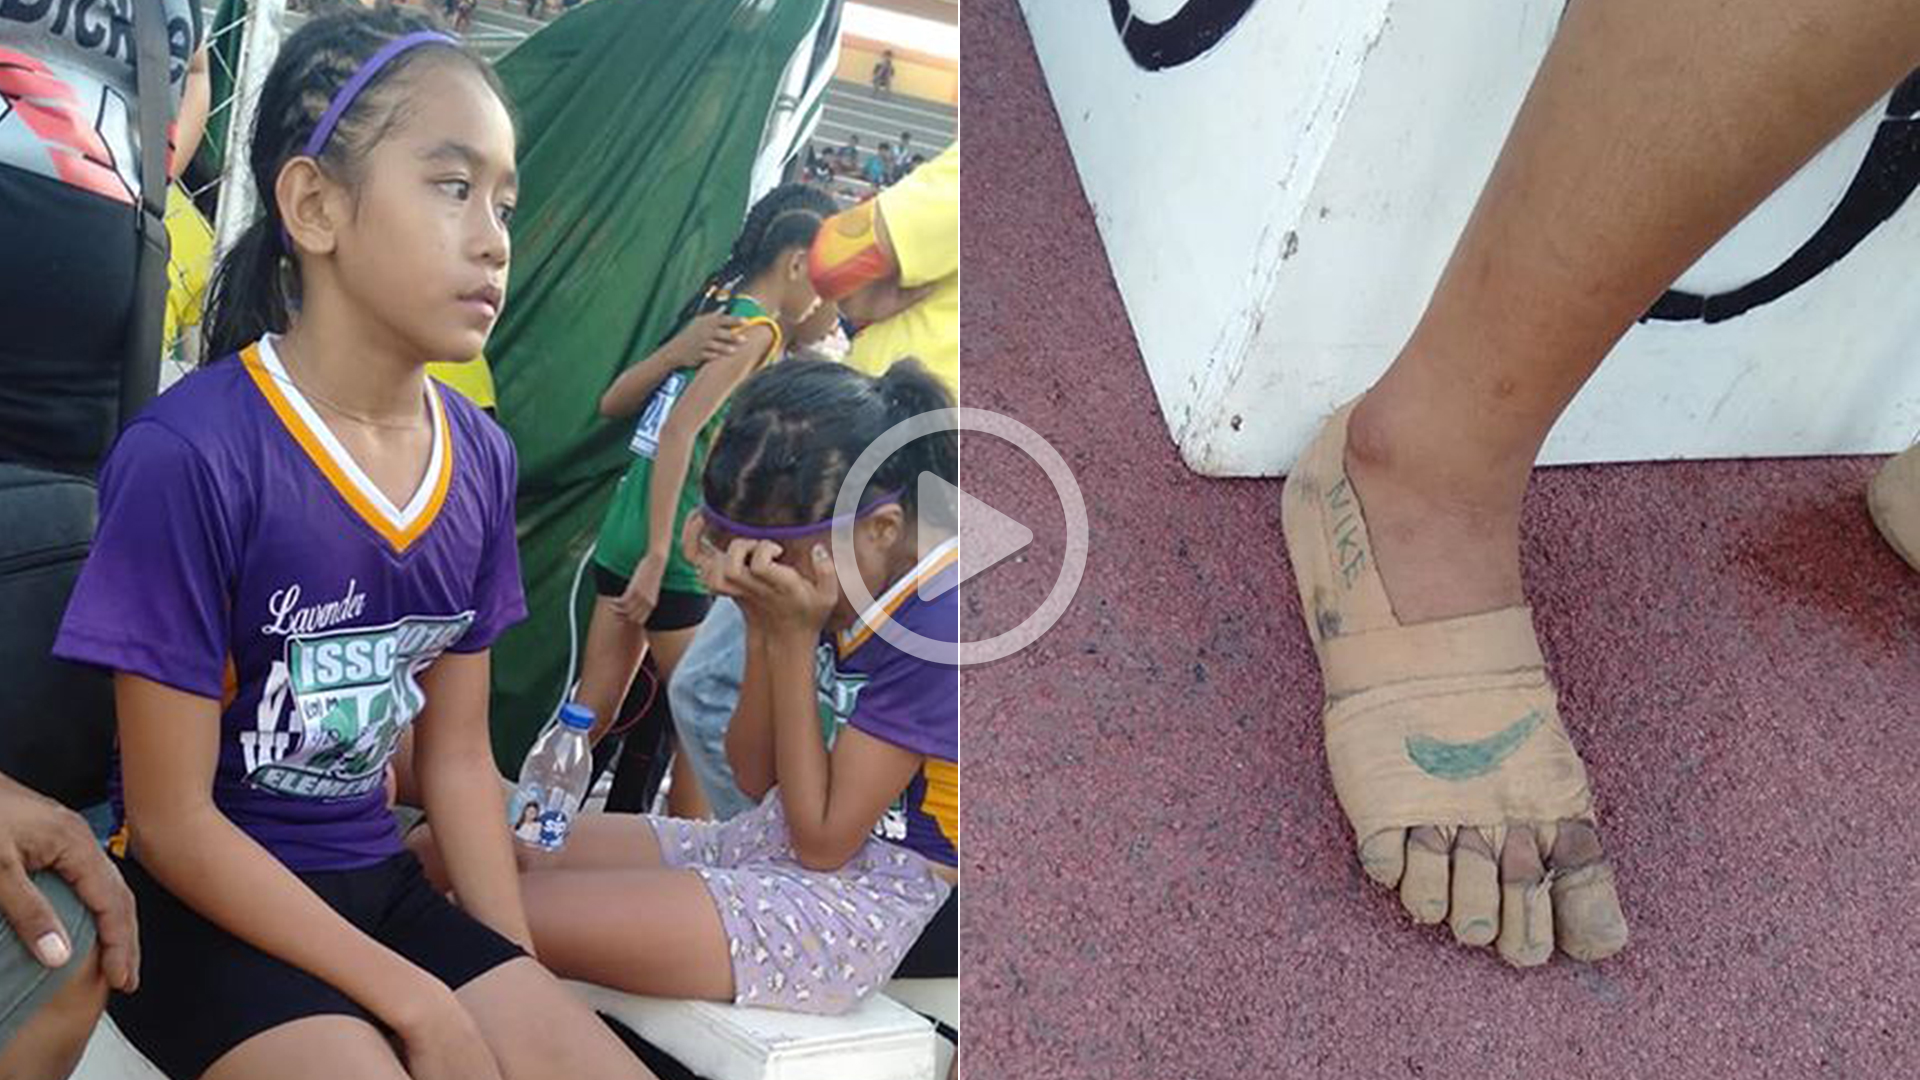 La emotiva historia de la niña filipina de 11 años que se dibujó unas zapatillas en los pies para y ganó tres medallas - Infobae